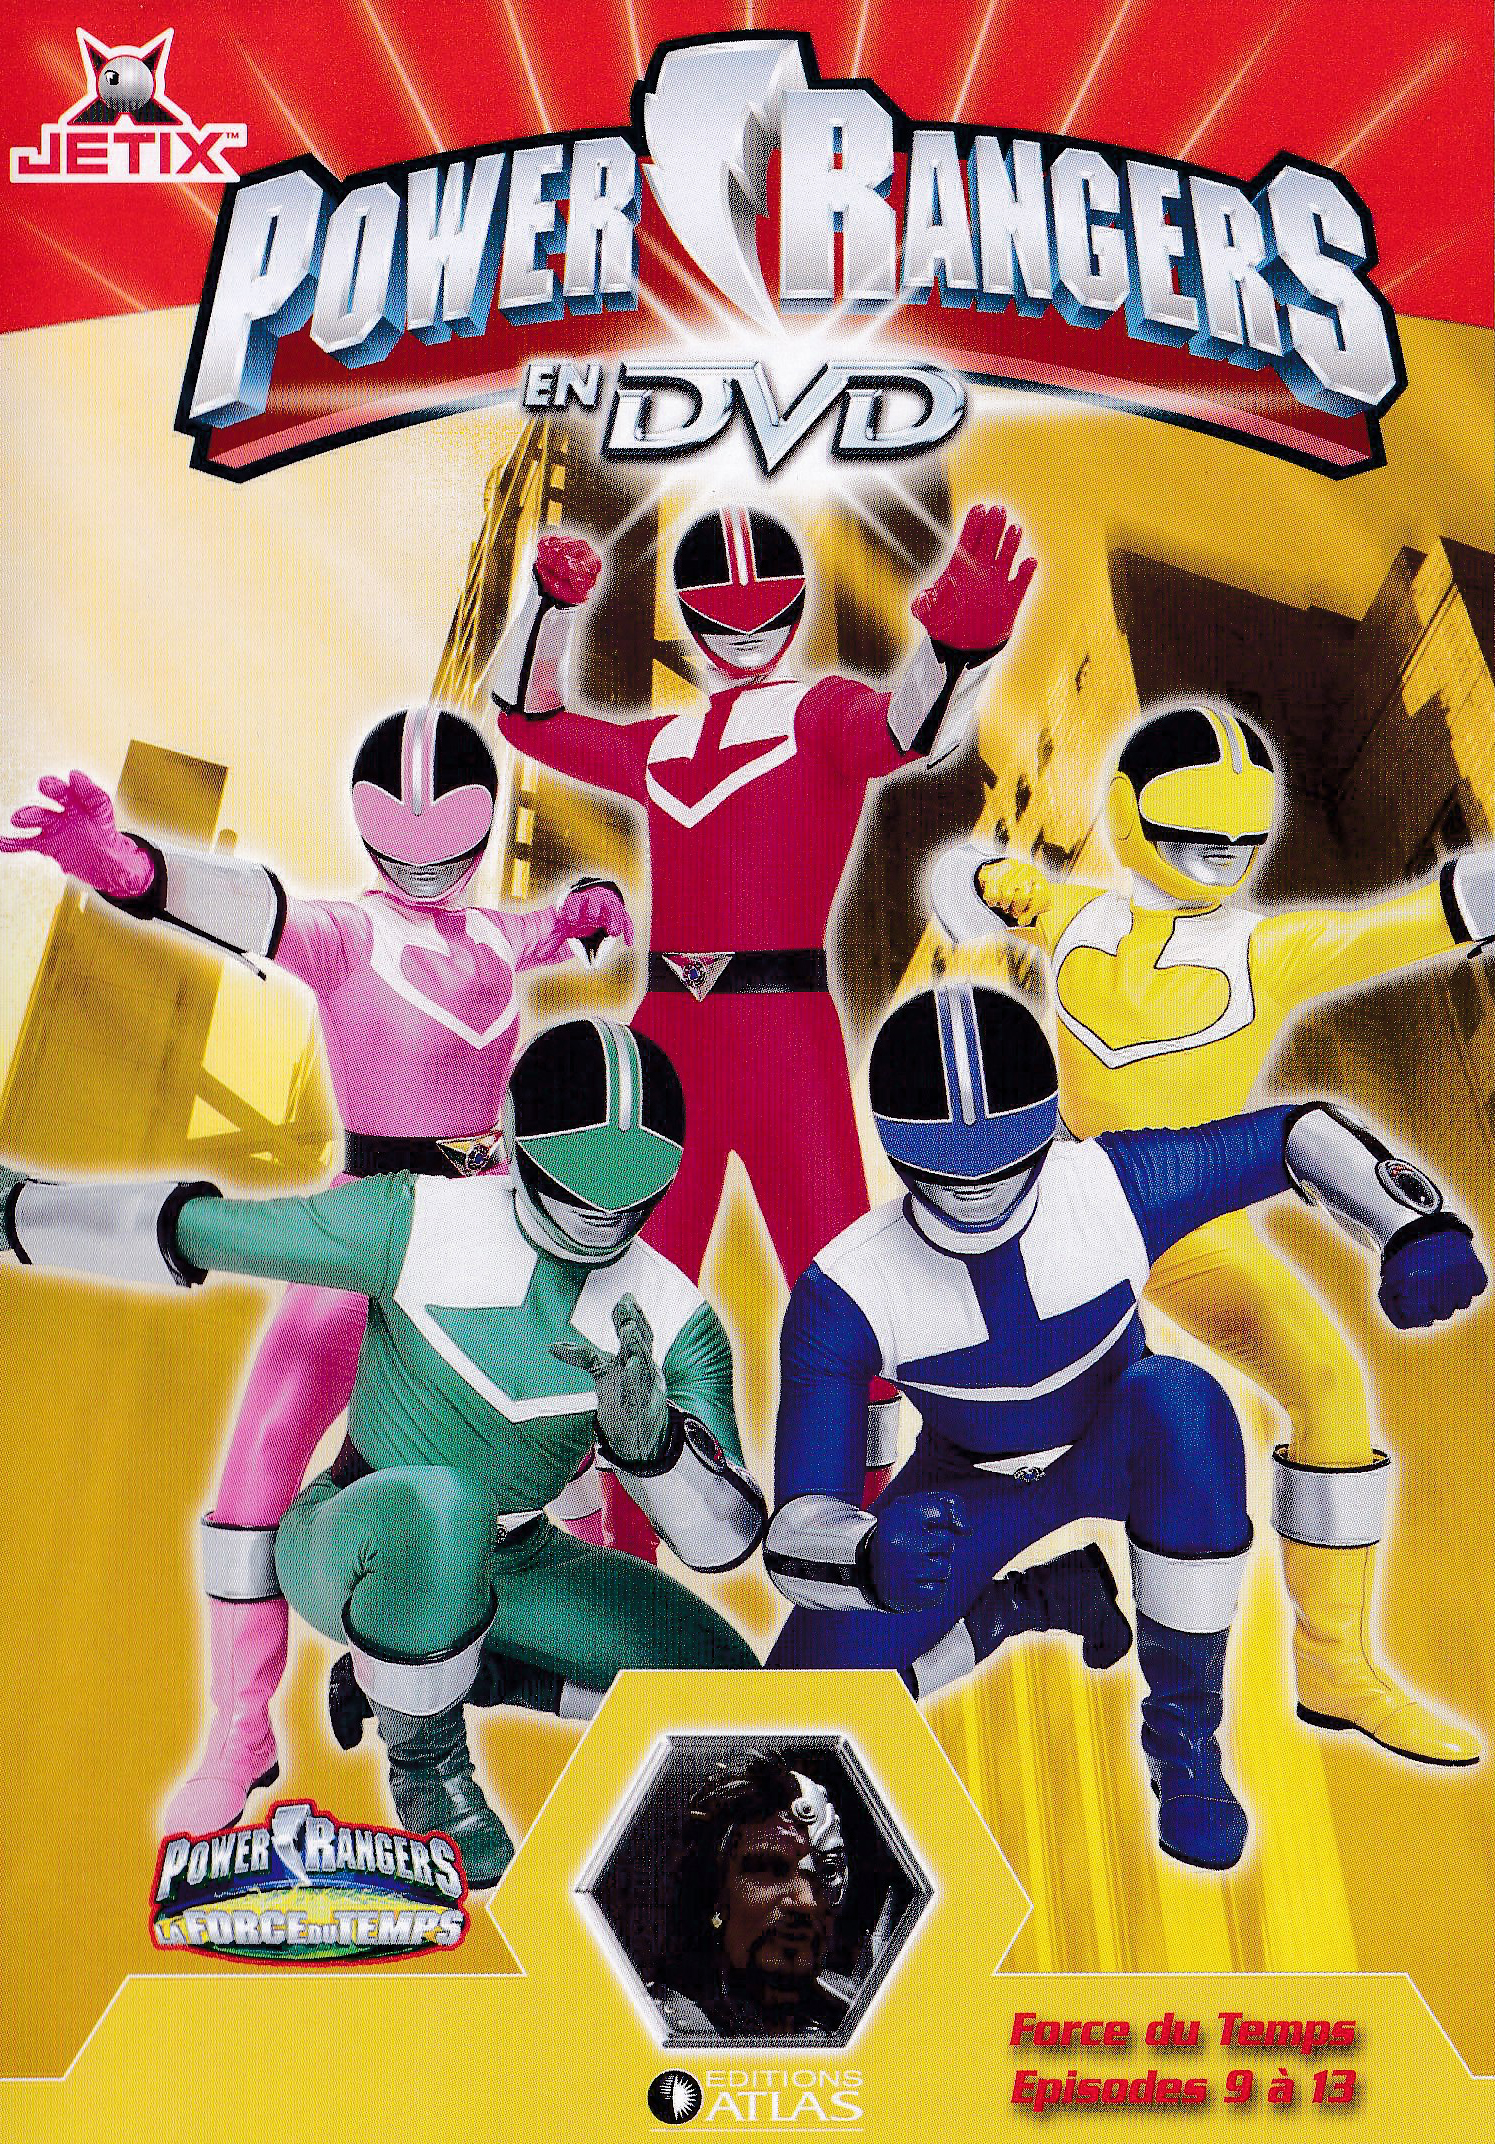 Power Rangers en DVD n°45